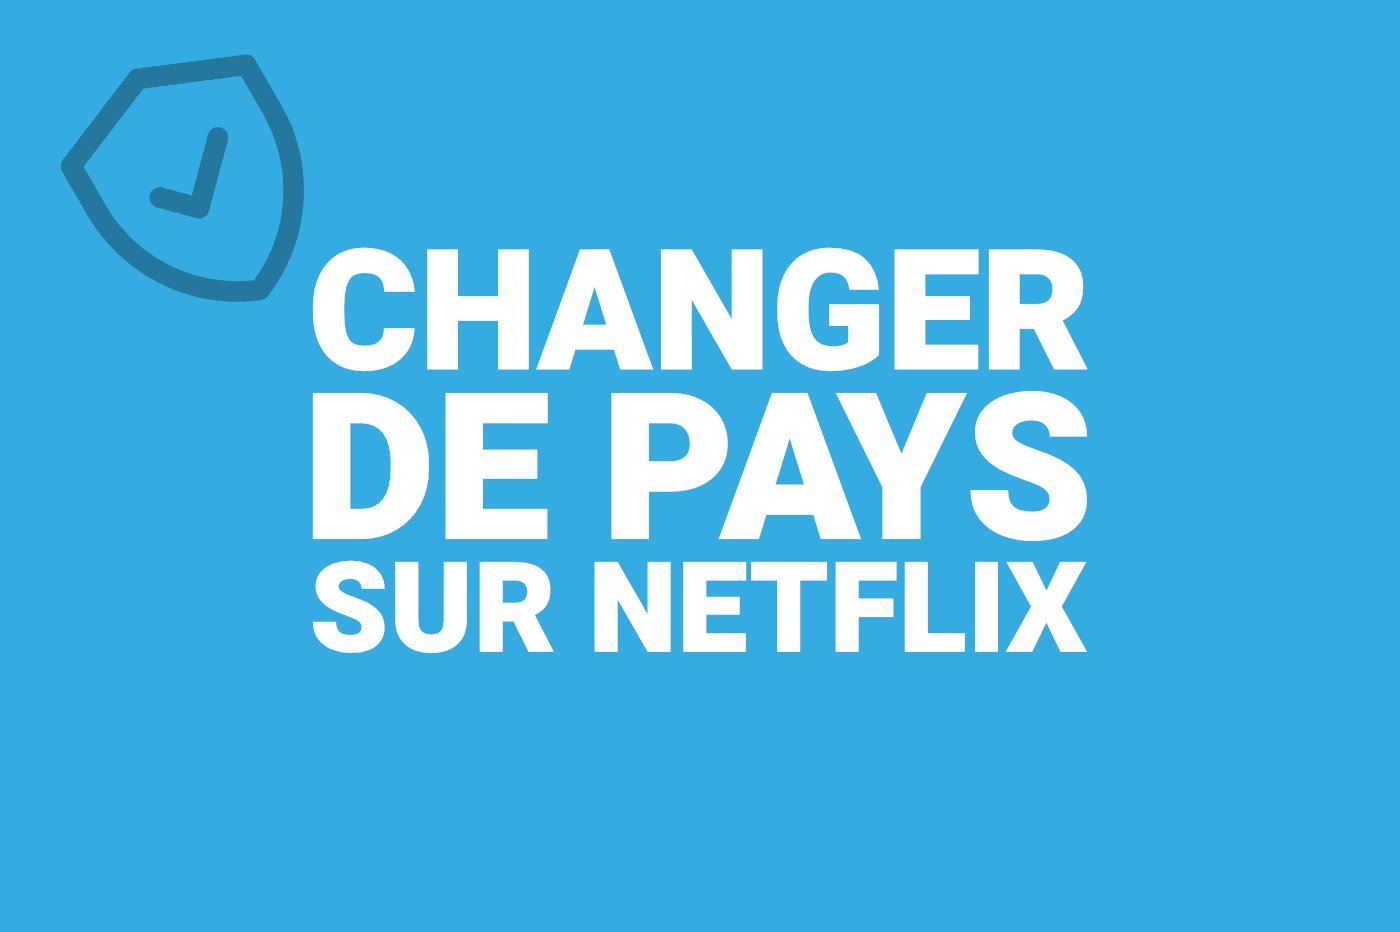 Changer pays Netflix